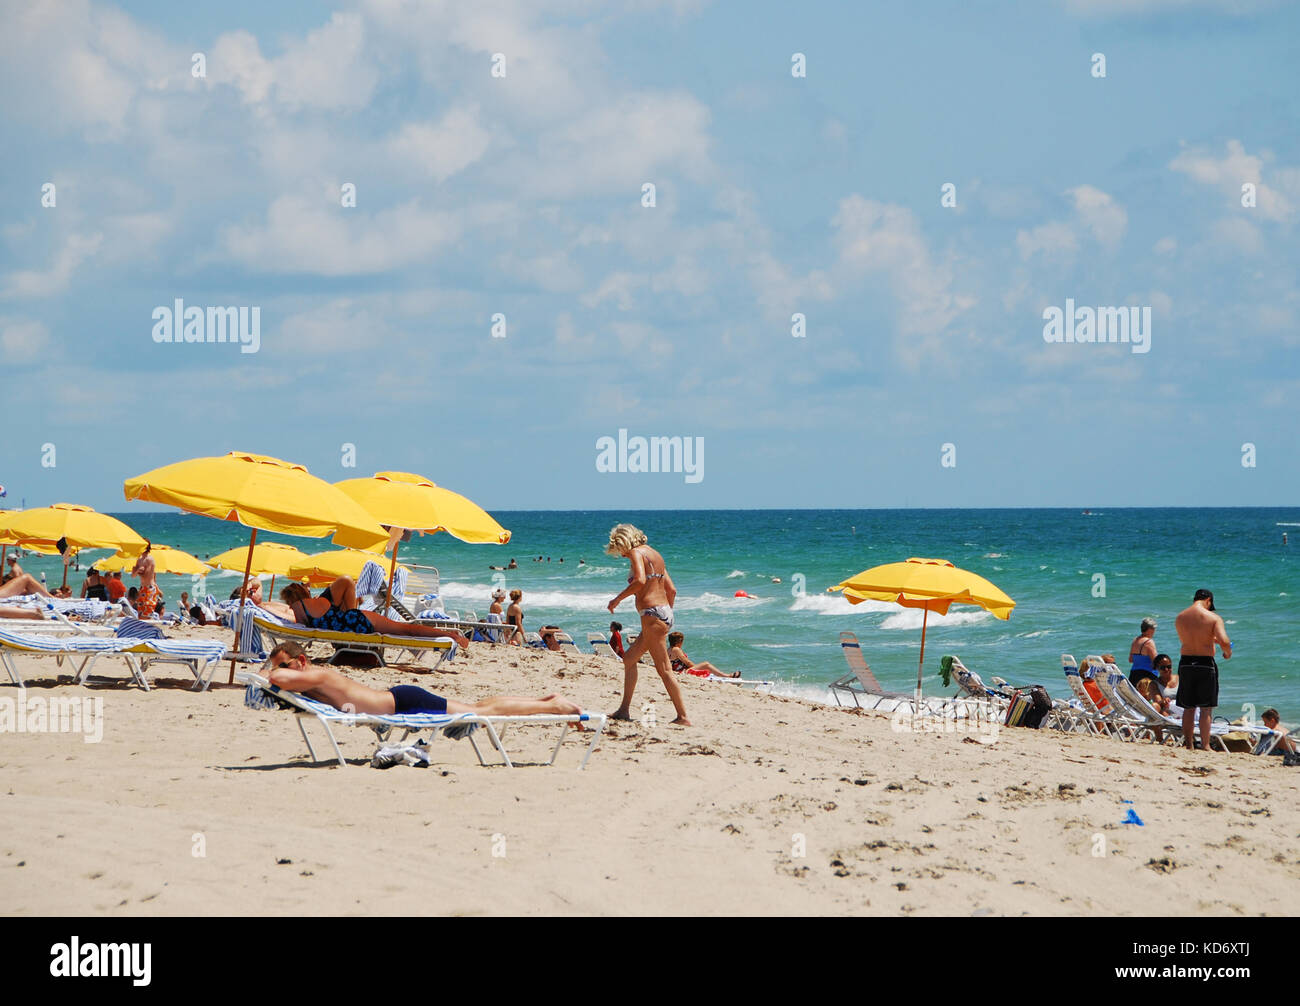 Fort Lauderdale, Stati Uniti d'America - 9 giugno 2007: giornata sulla spiaggia di Fort Lauderdale, Florida. turisti in Florida in numeri elevati durante il periodo di alta stagione Foto Stock